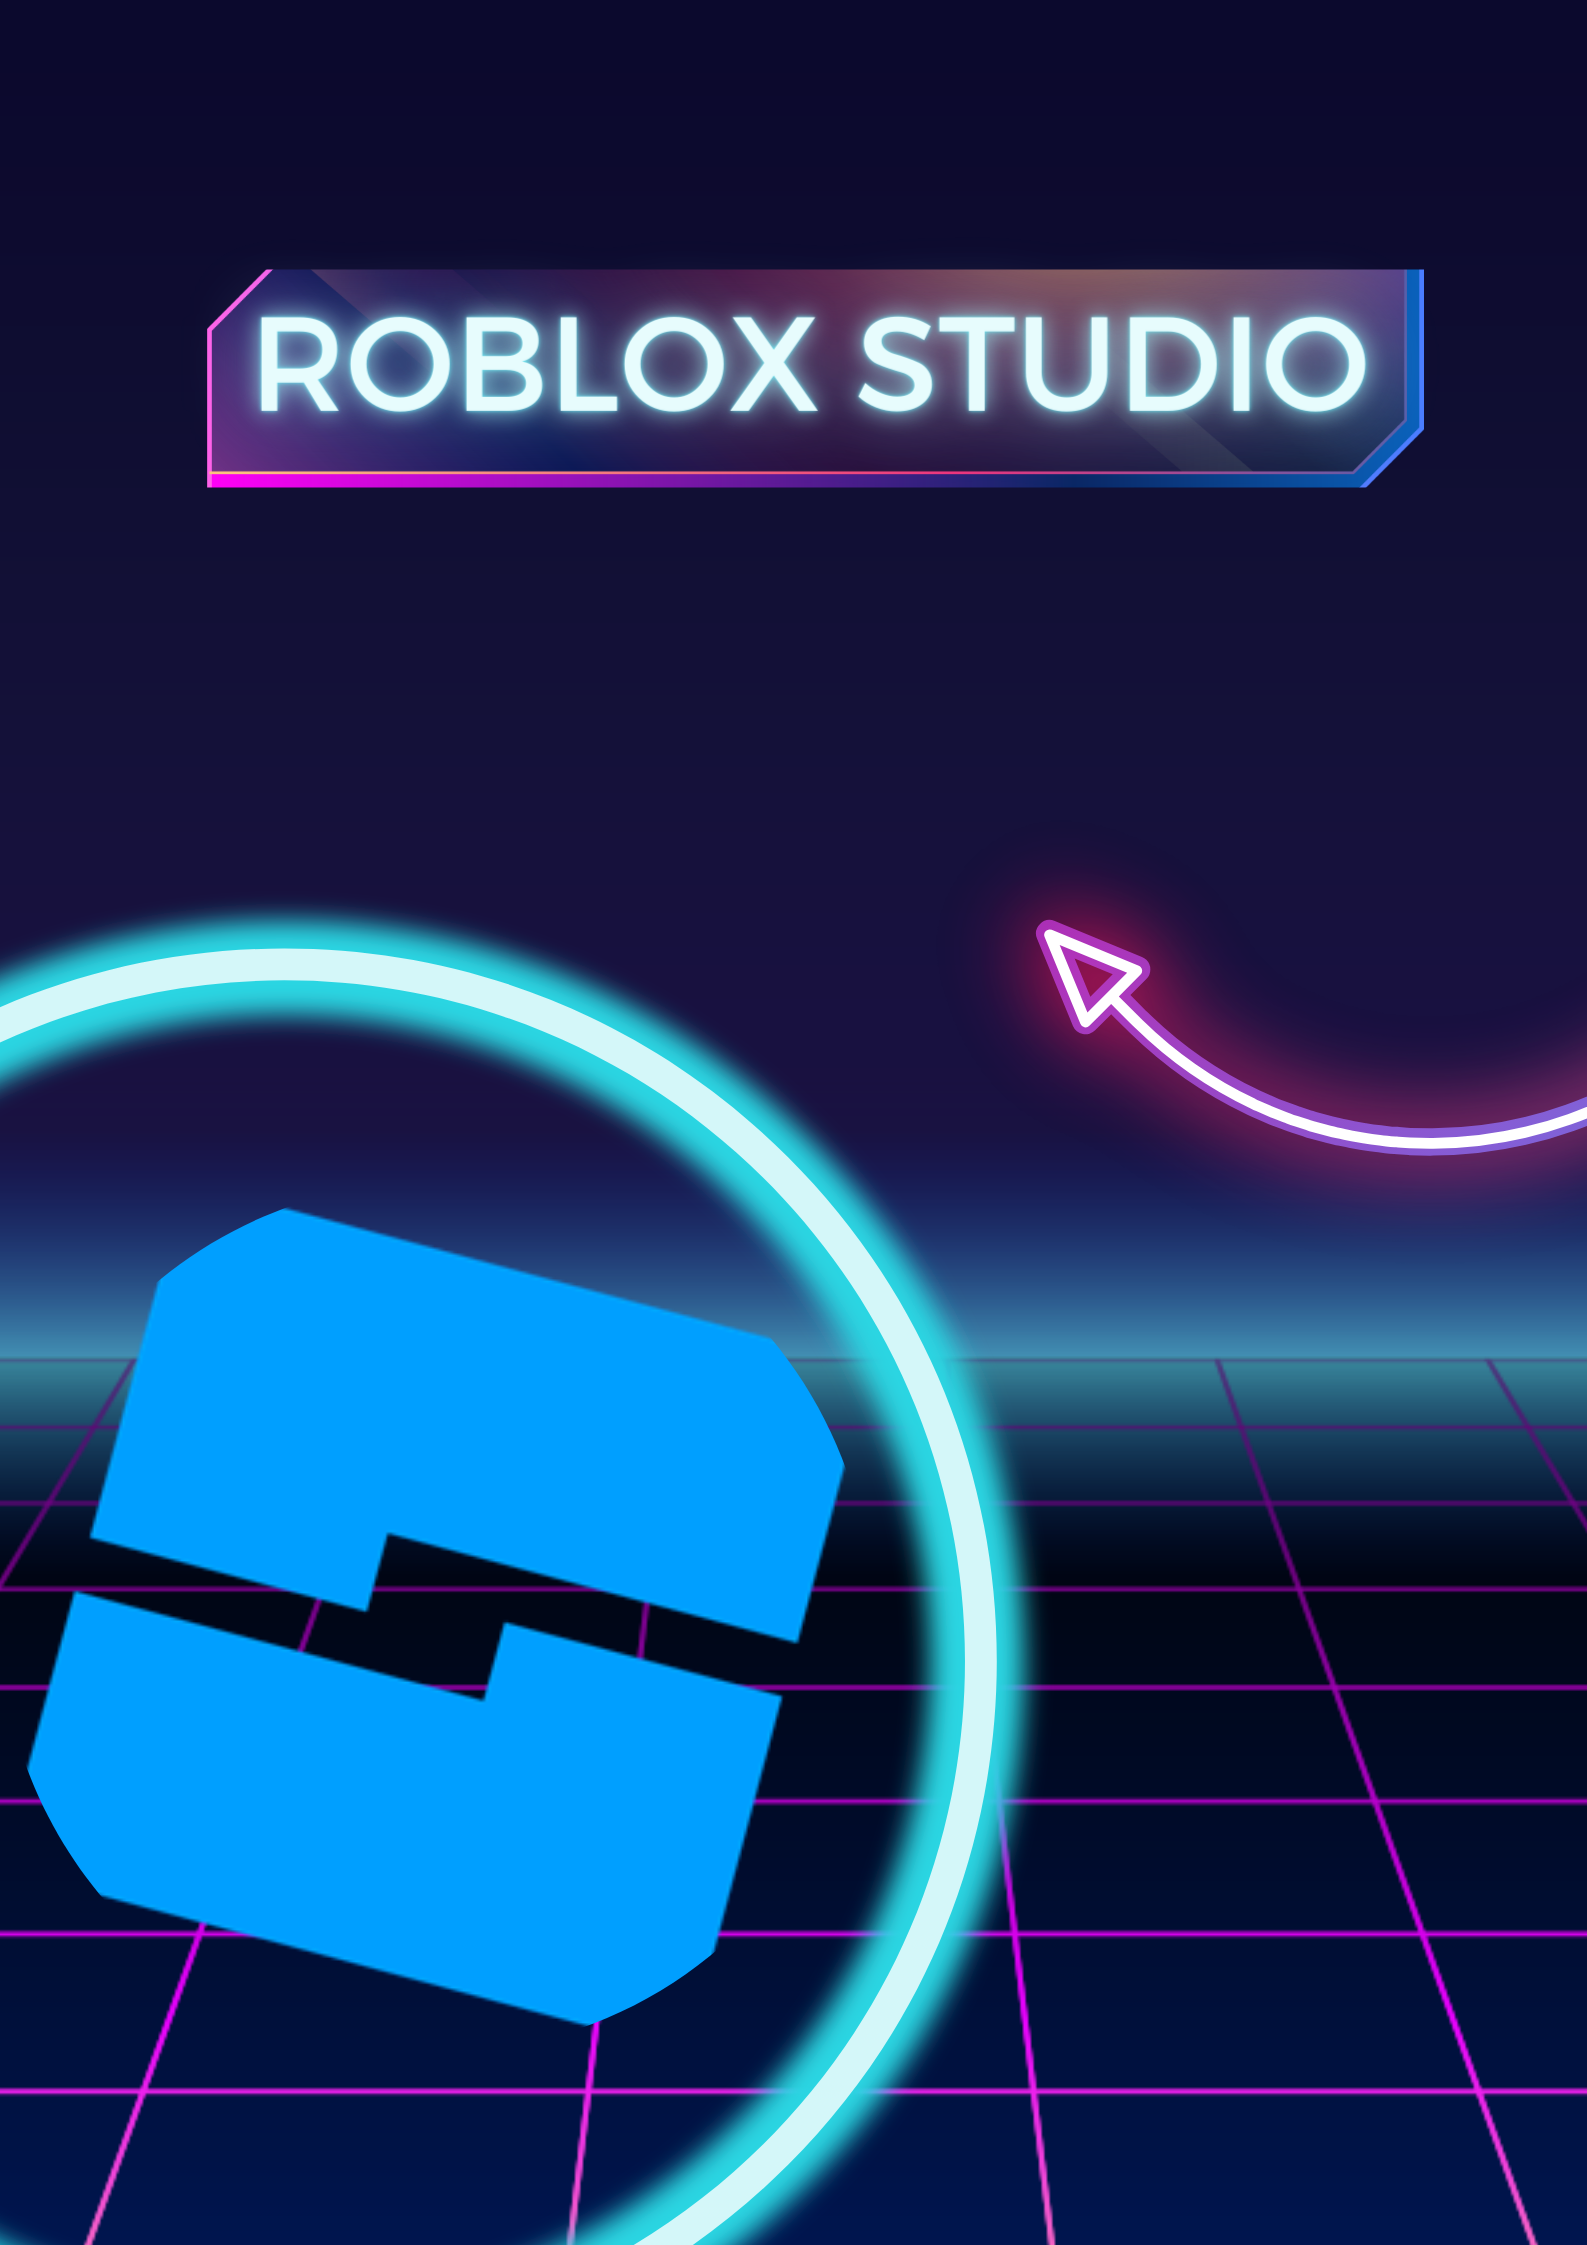 Comandos Básicos e Interface Roblox Studio - Como Criar Jogos no